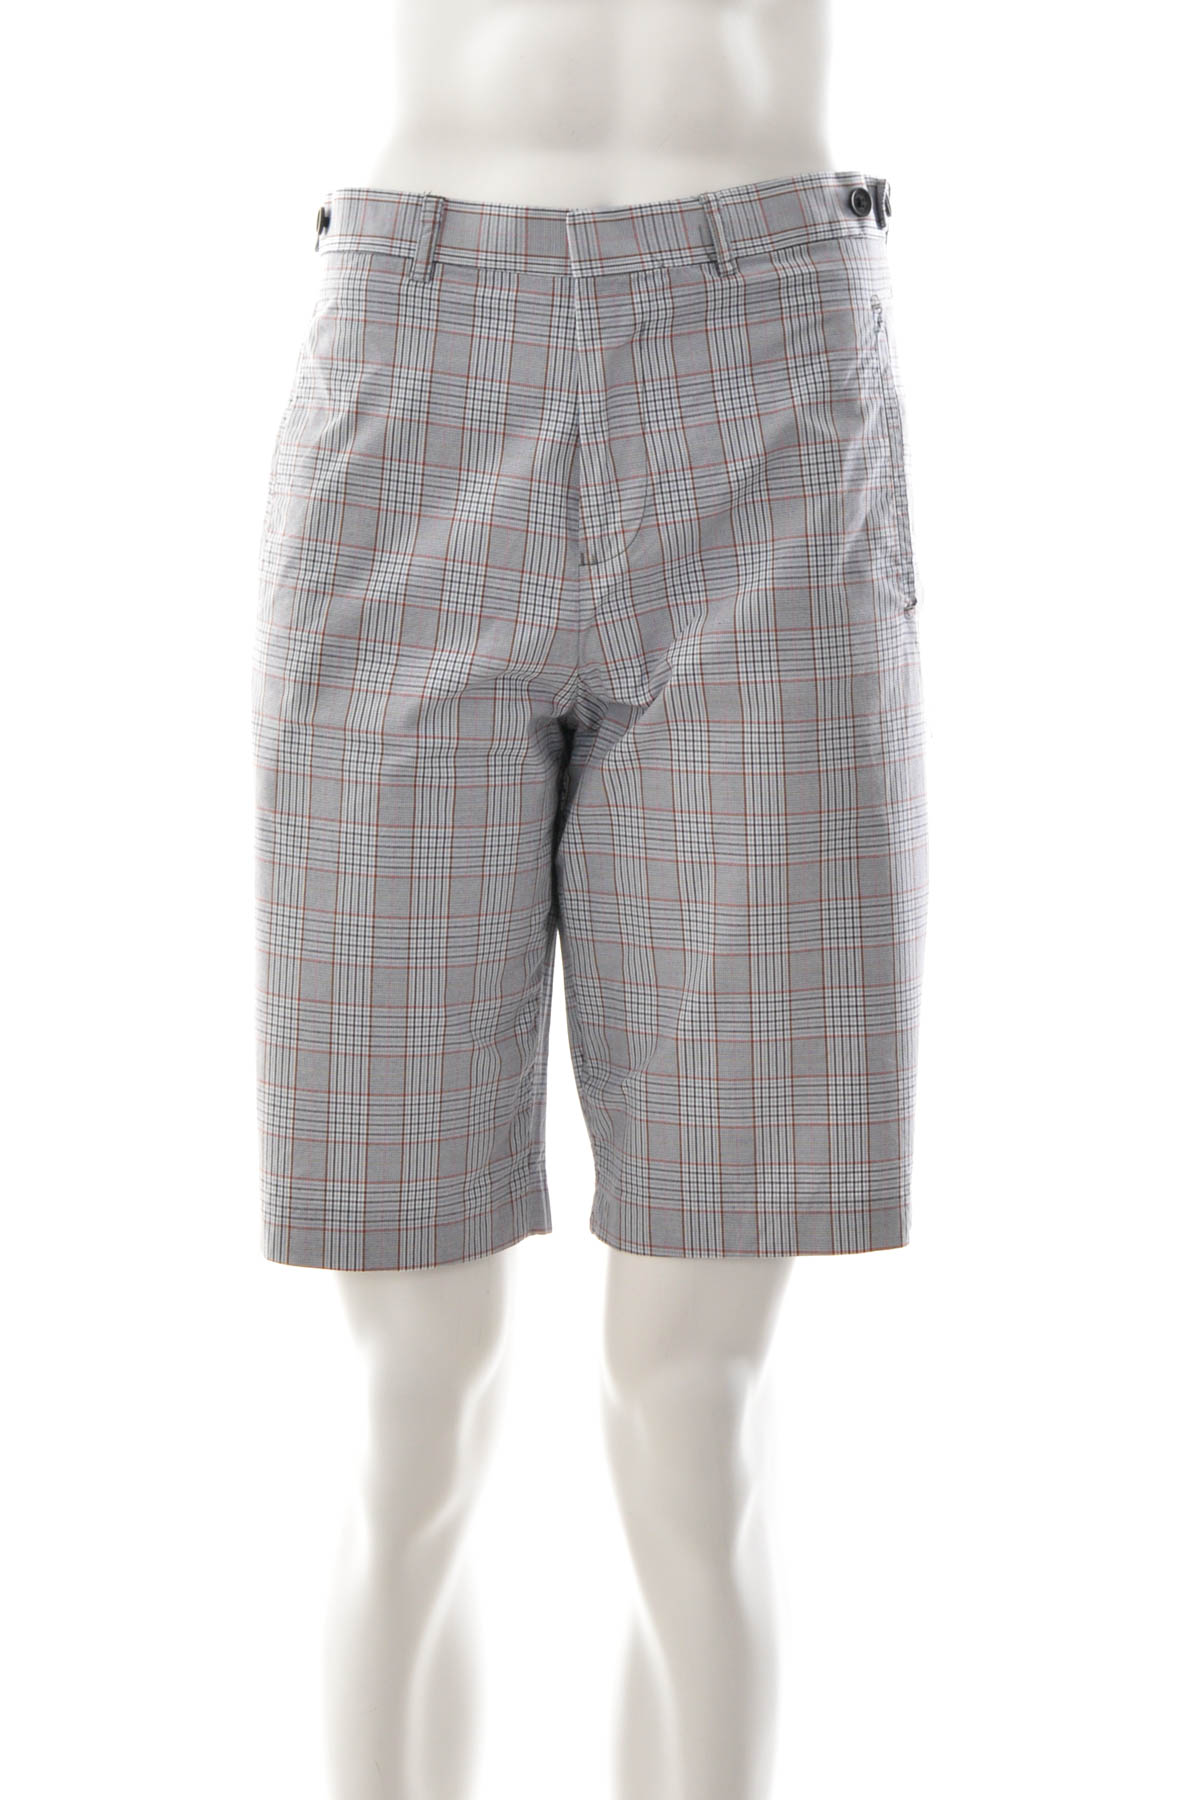 Men's shorts - Ben Sherman - 0